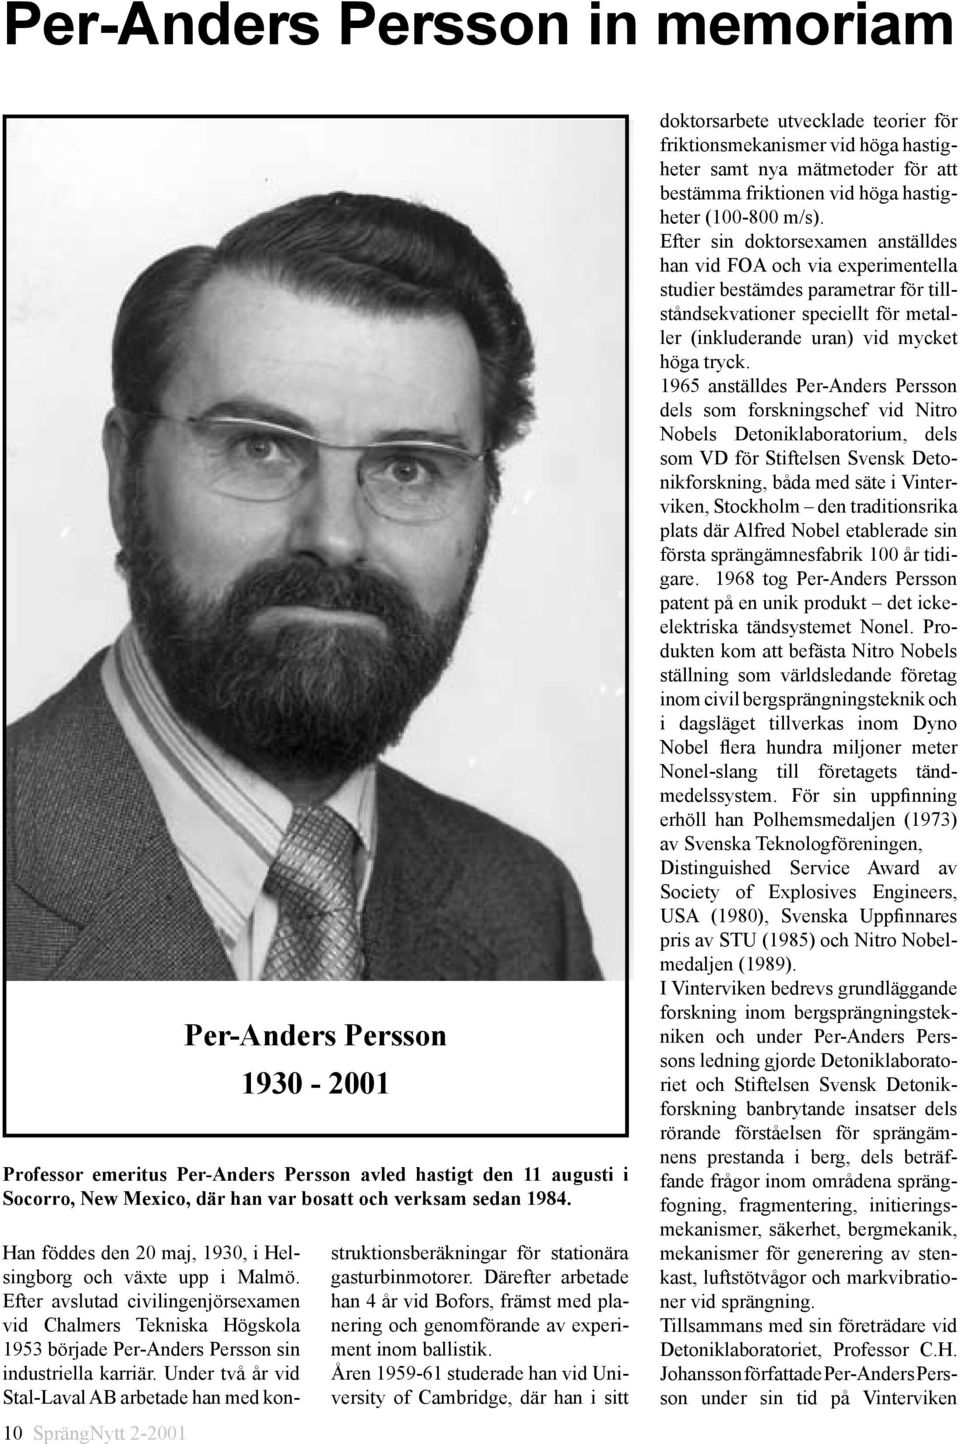 Under två år vid Stal-Laval AB arbetade han med kon- 10 SprängNytt 2-2001 Per-Anders Persson 1930-2001 Professor emeritus Per-Anders Persson avled hastigt den 11 augusti i Socorro, New Mexico, där